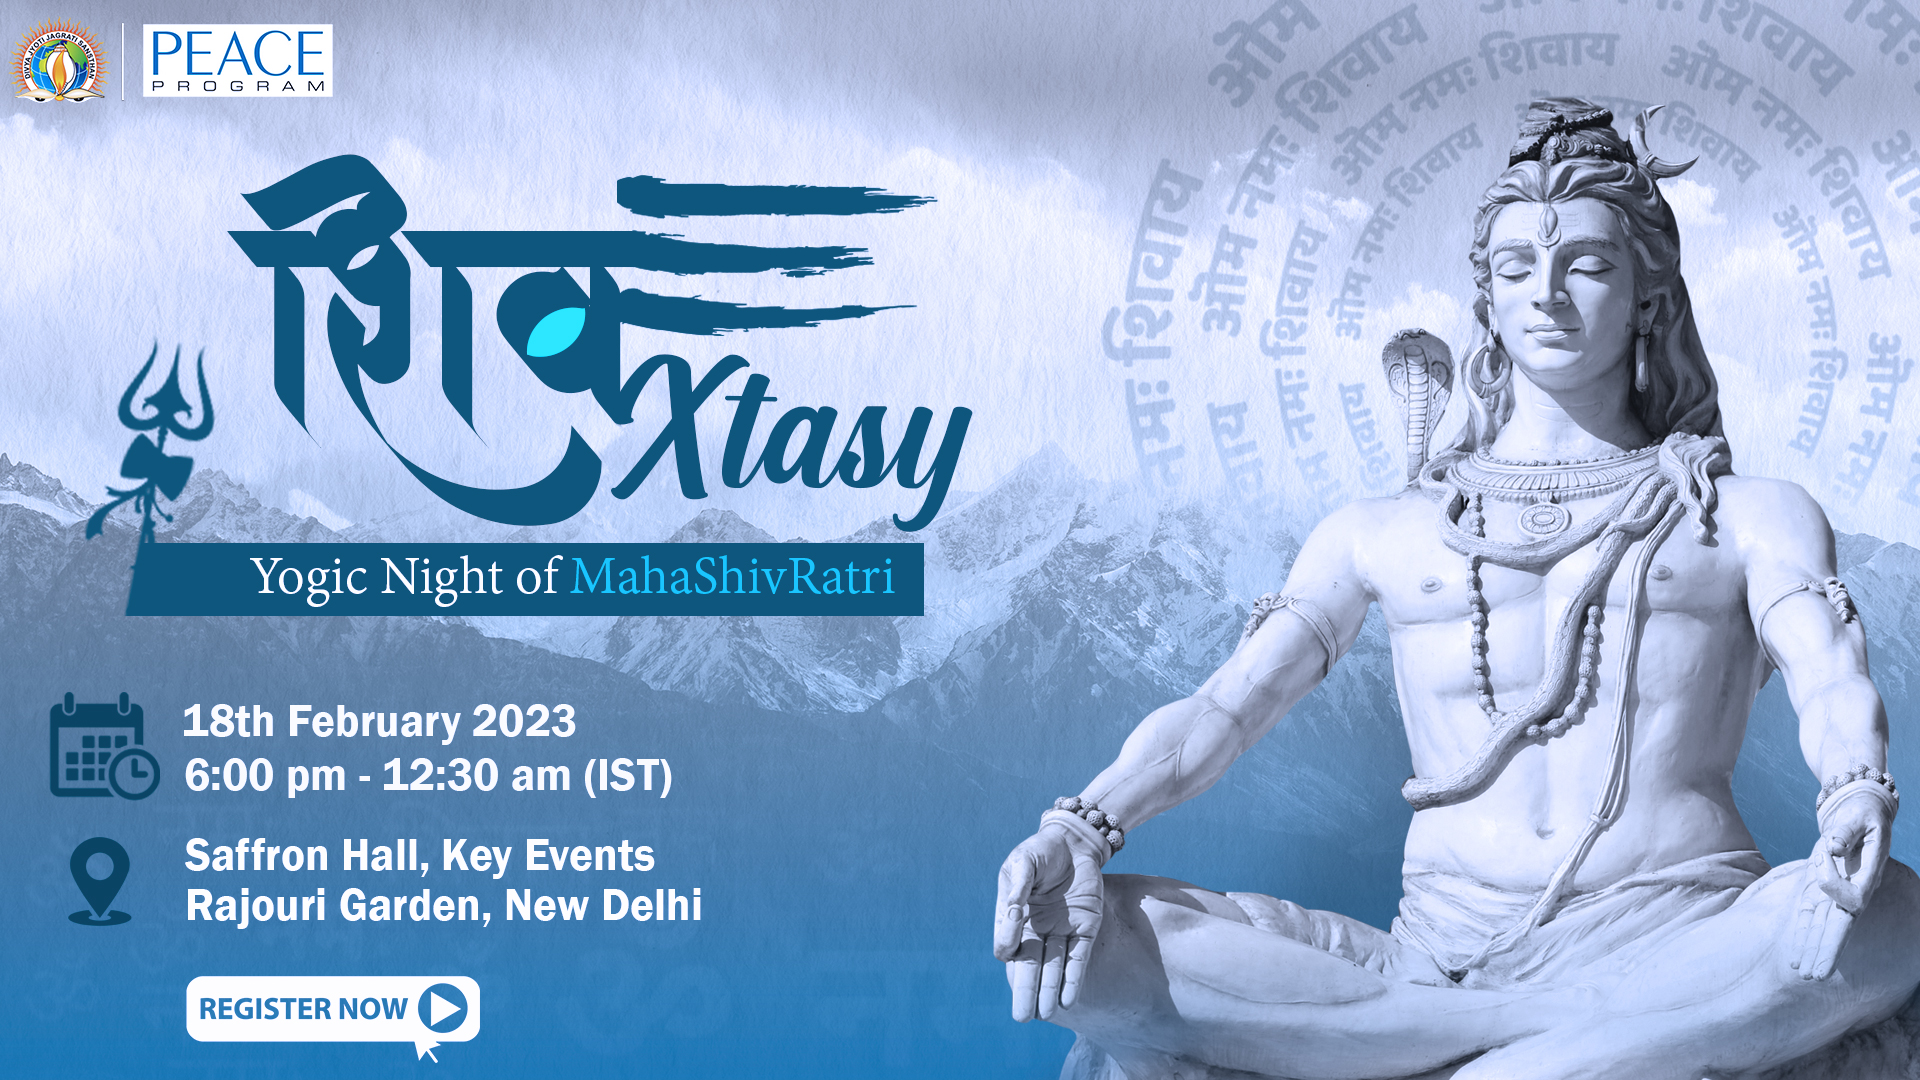 Shiv-Xtasy: The Yogic Night MahaShivRatri, West Delhi, Delhi, India